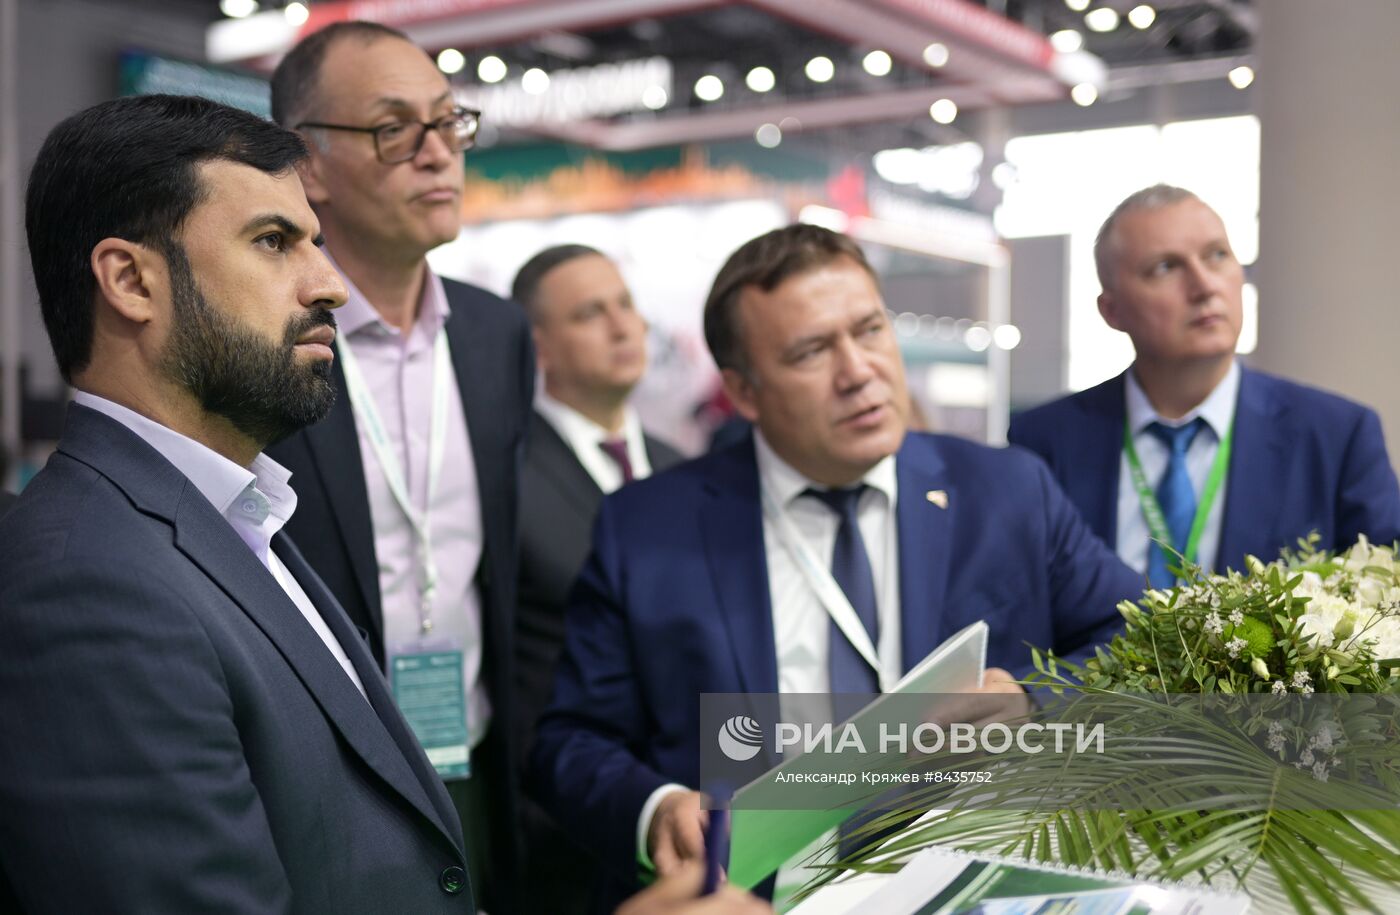 KAZANFORUM 2023. Россия - Исламский мир: медиасотрудничество для устойчивого развития и экономического процветания